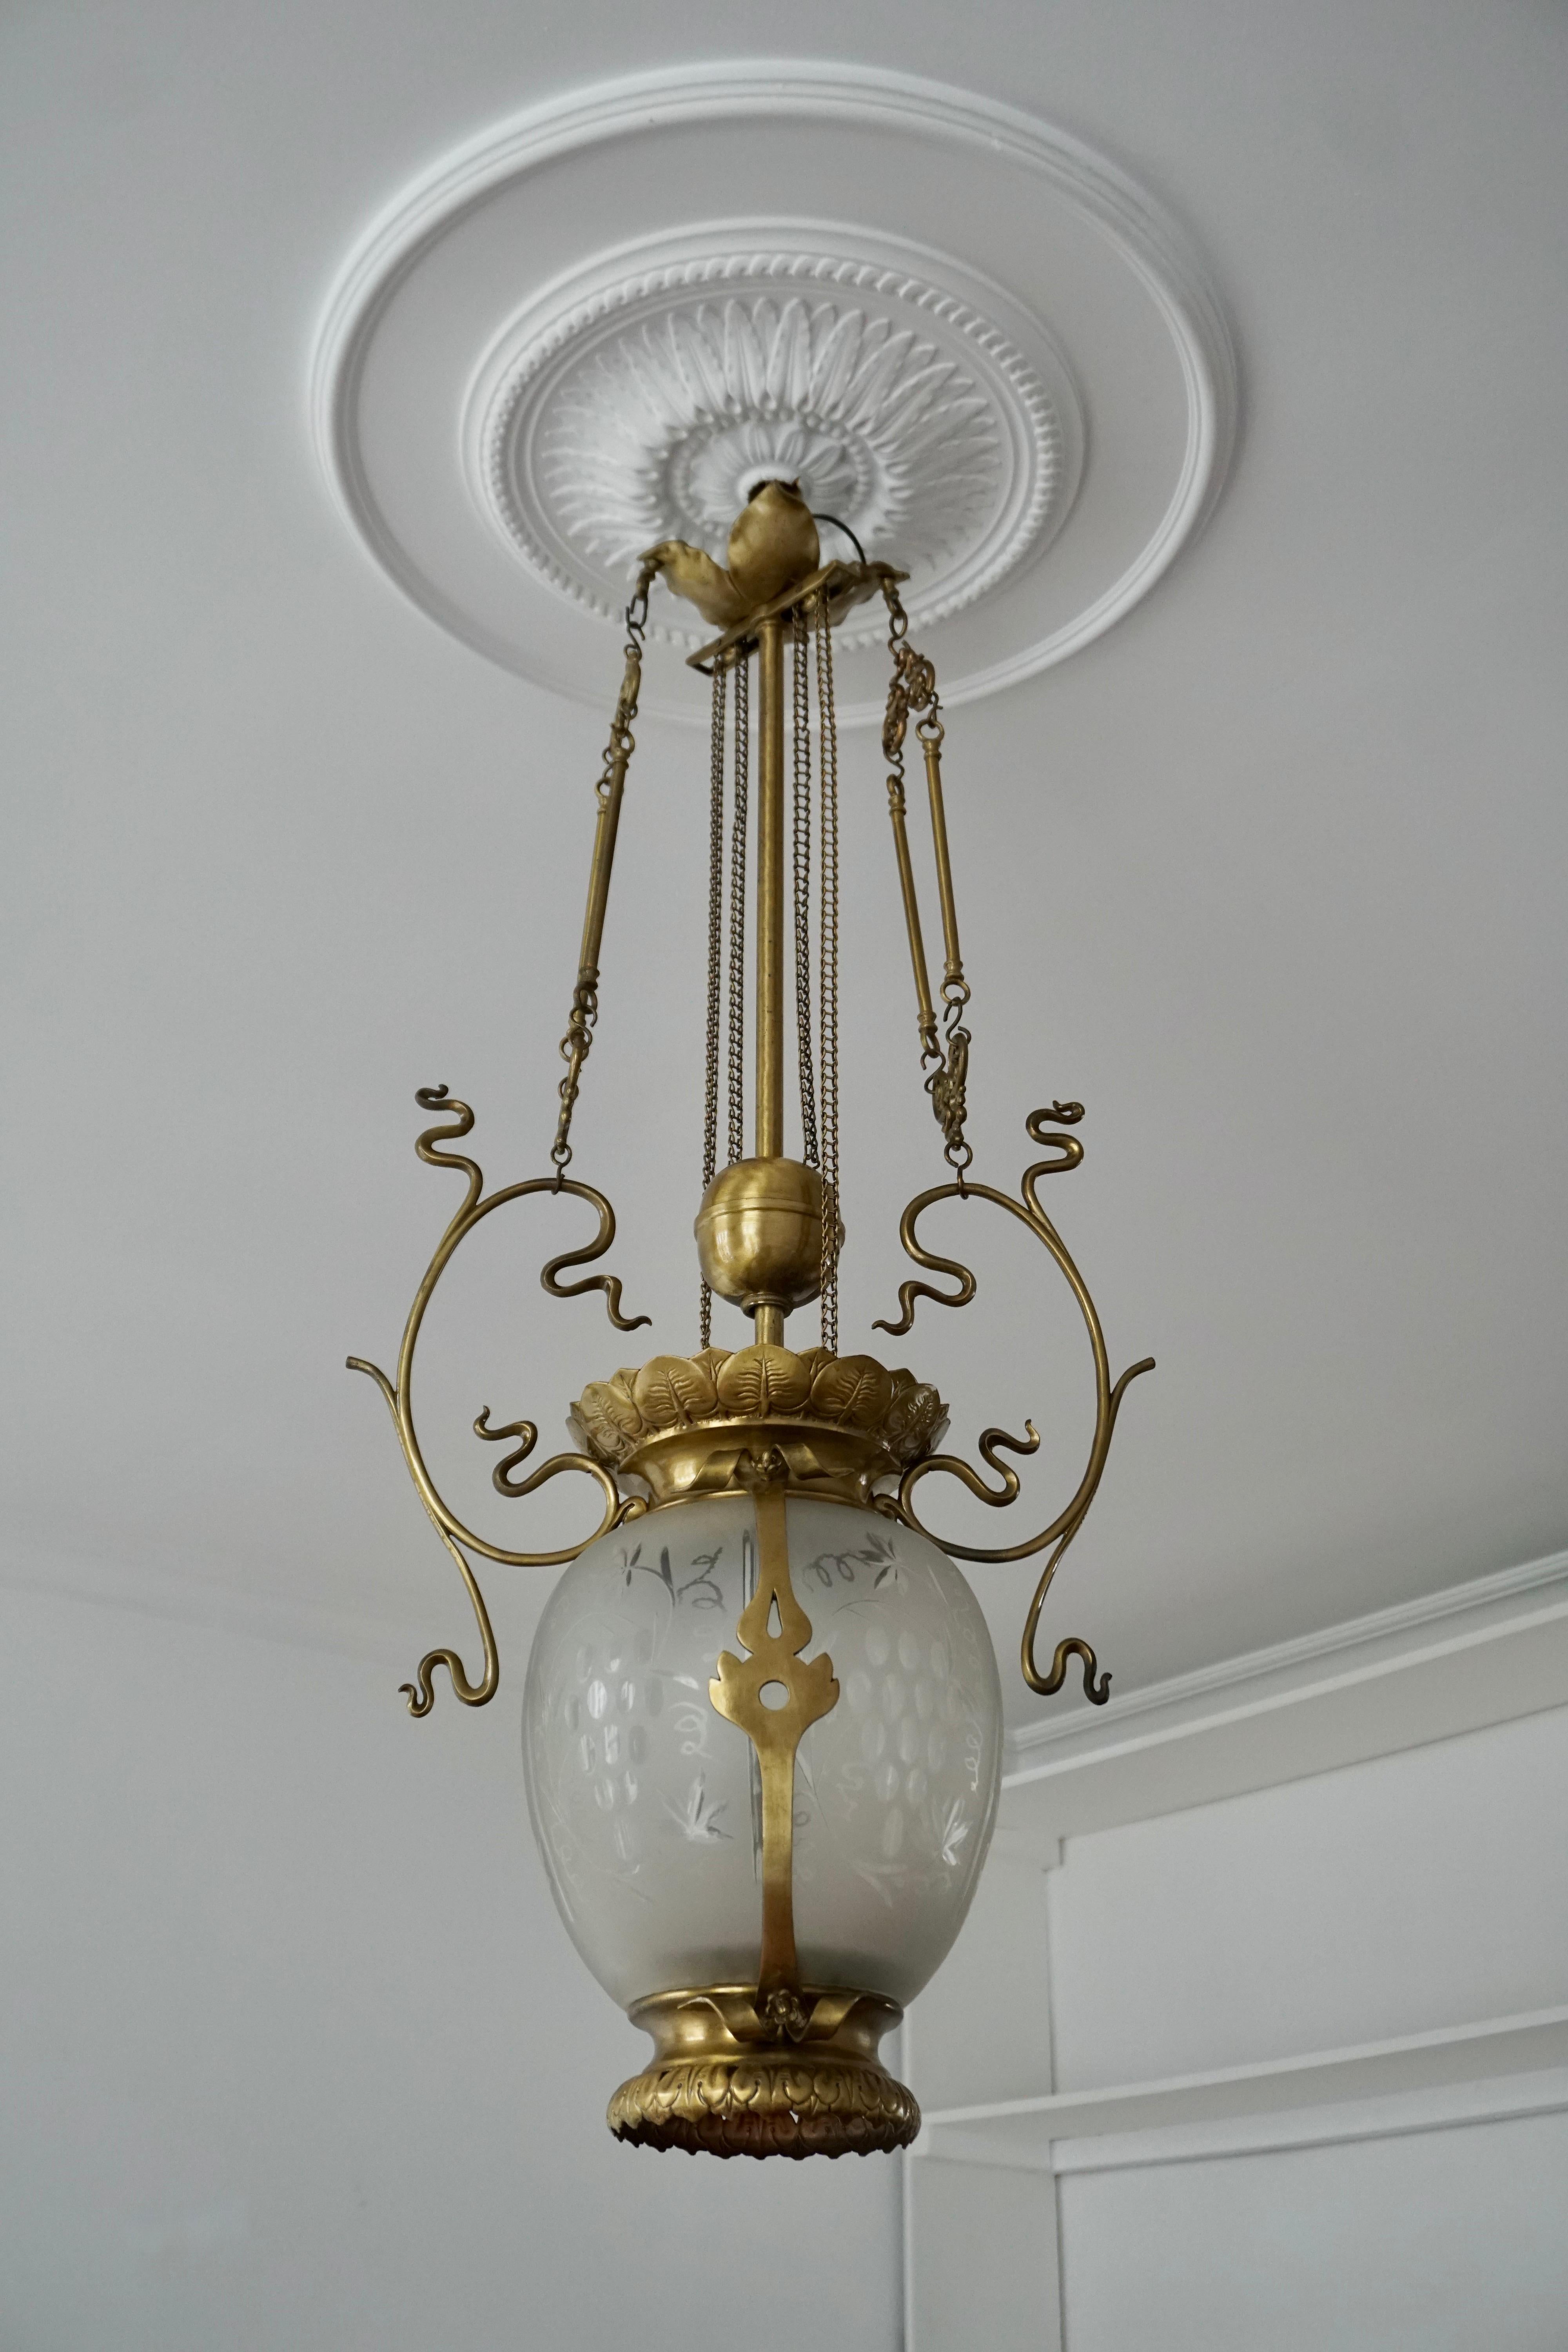 Eleganter Art-Deco-Kronleuchter oder -Laterne aus Messing und Glas.
Belgien, 1900-1930.

Die Leuchte benötigt eine einzelne E27-Schraubglühbirne (max. 100 Watt) und ist LED-kompatibel.

Maße: Höhe 95 cm.
Breite 44 cm.
Tiefe 23 cm.